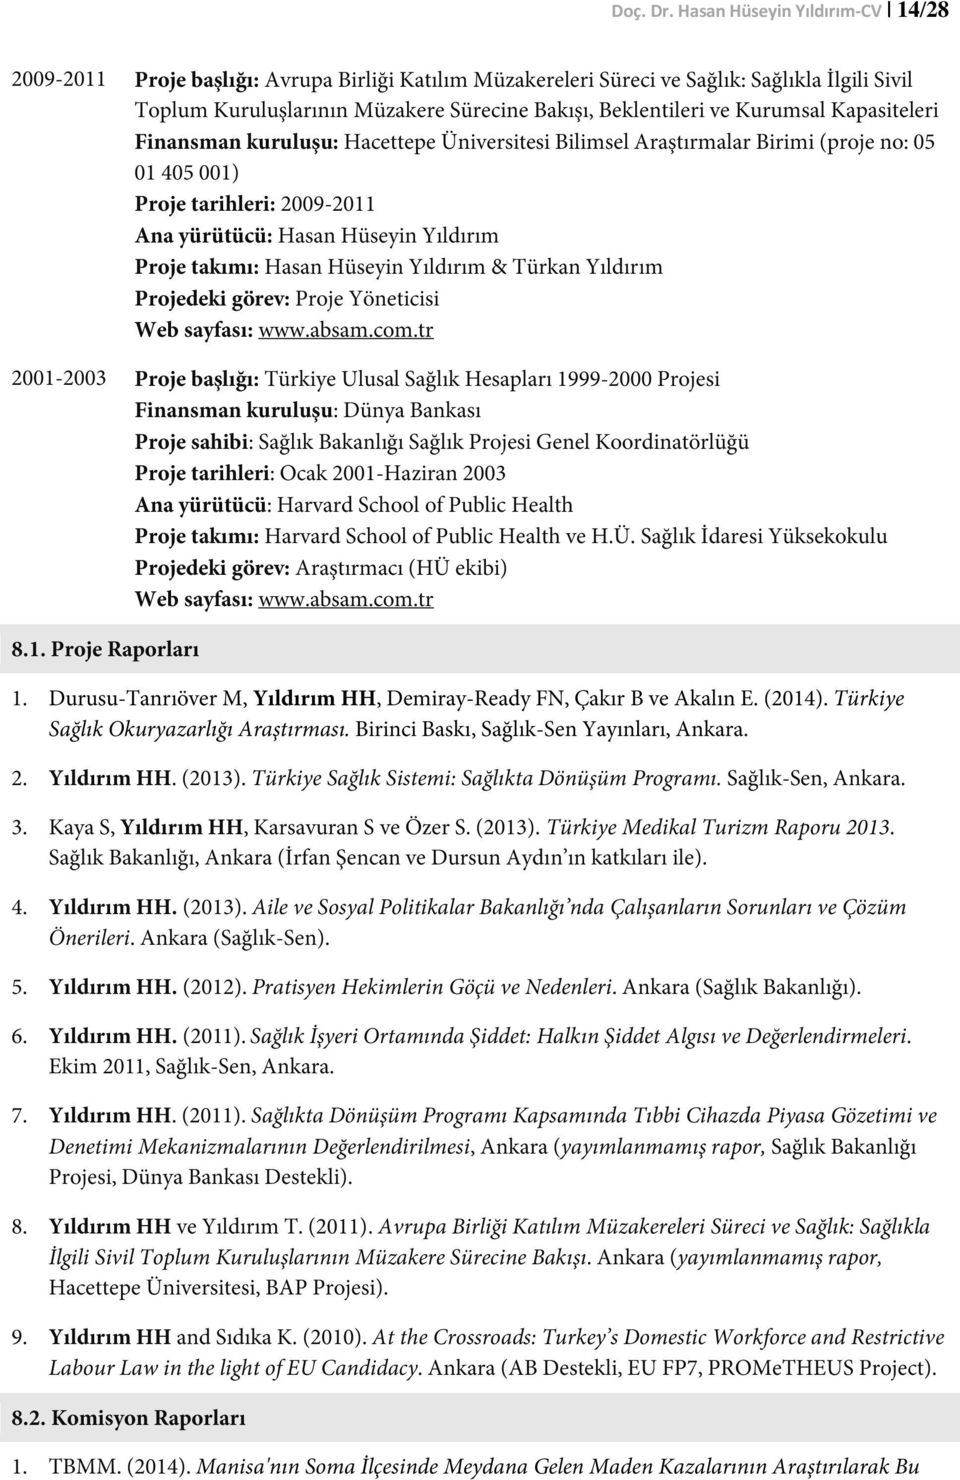 Kurumsal Kapasiteleri Finansman kuruluşu: Hacettepe Üniversitesi Bilimsel Araştırmalar Birimi (proje no: 05 01 405 001) Proje tarihleri: 2009-2011 Ana yürütücü: Hasan Hüseyin Yıldırım Proje takımı: